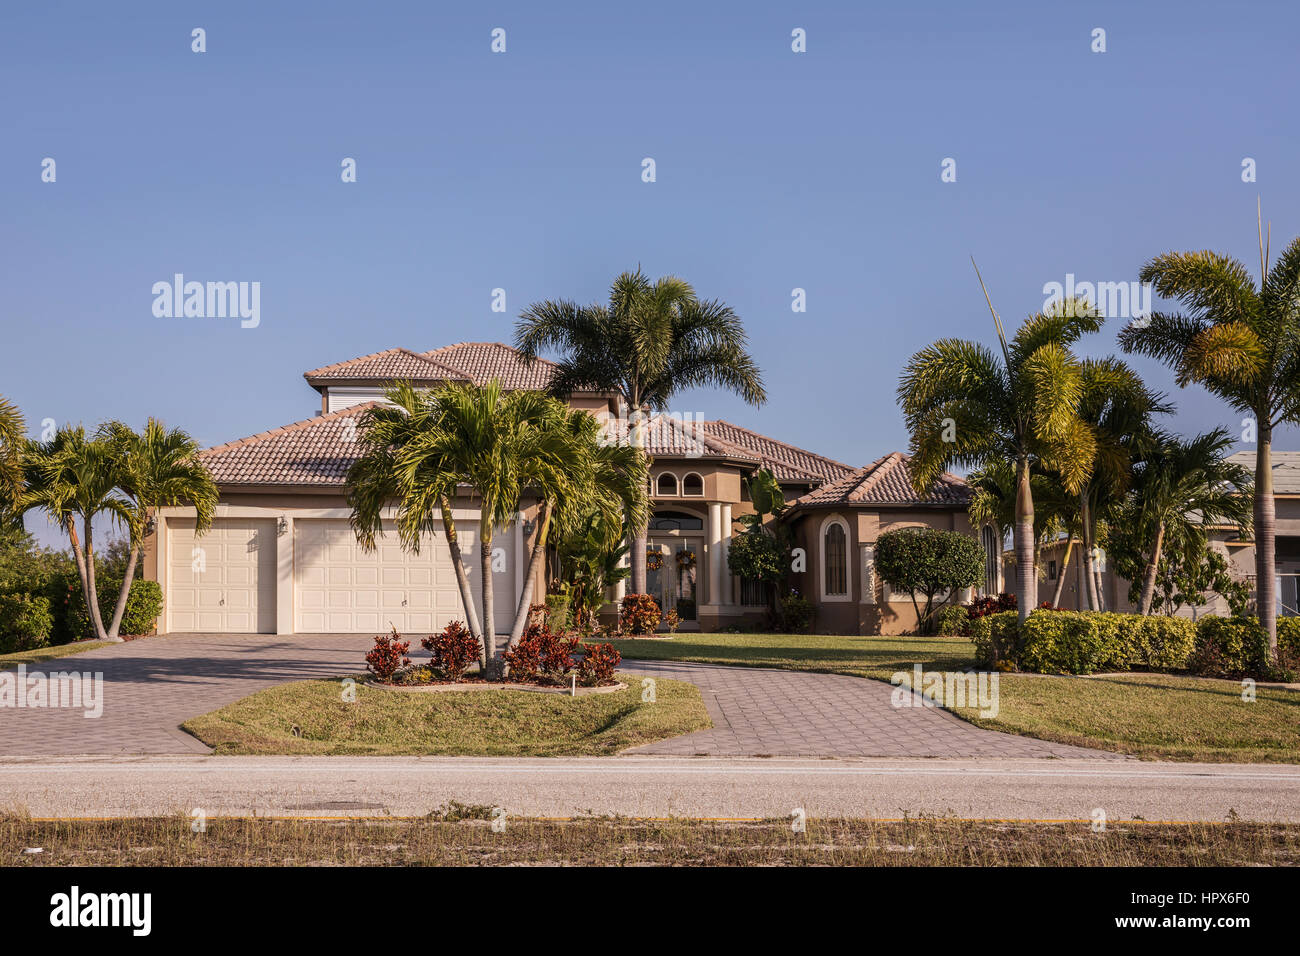 El suroeste de Florida típico de bloque de hormigón de estuco y casa en el campo, con palmeras, plantas tropicales y flores, césped y pinos. f Foto de stock